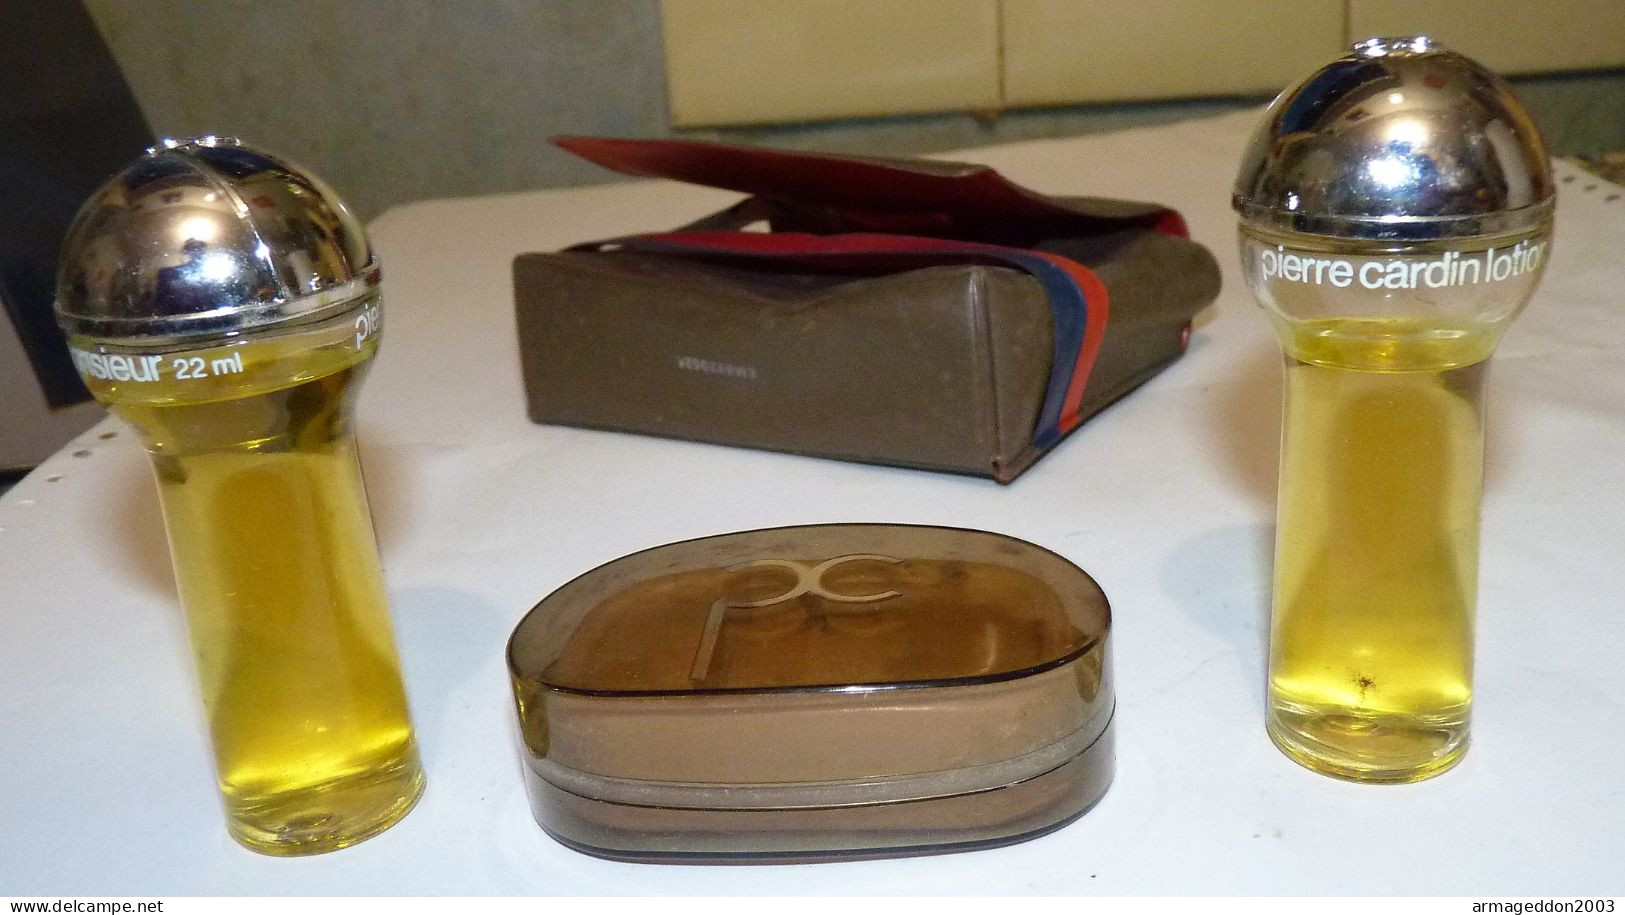 Vintage Pierre Cardin MONSIEUR COLLECTION EAU DE TOILETTE SAVON APRES RASAGE - Miniature Bottles (in Box)